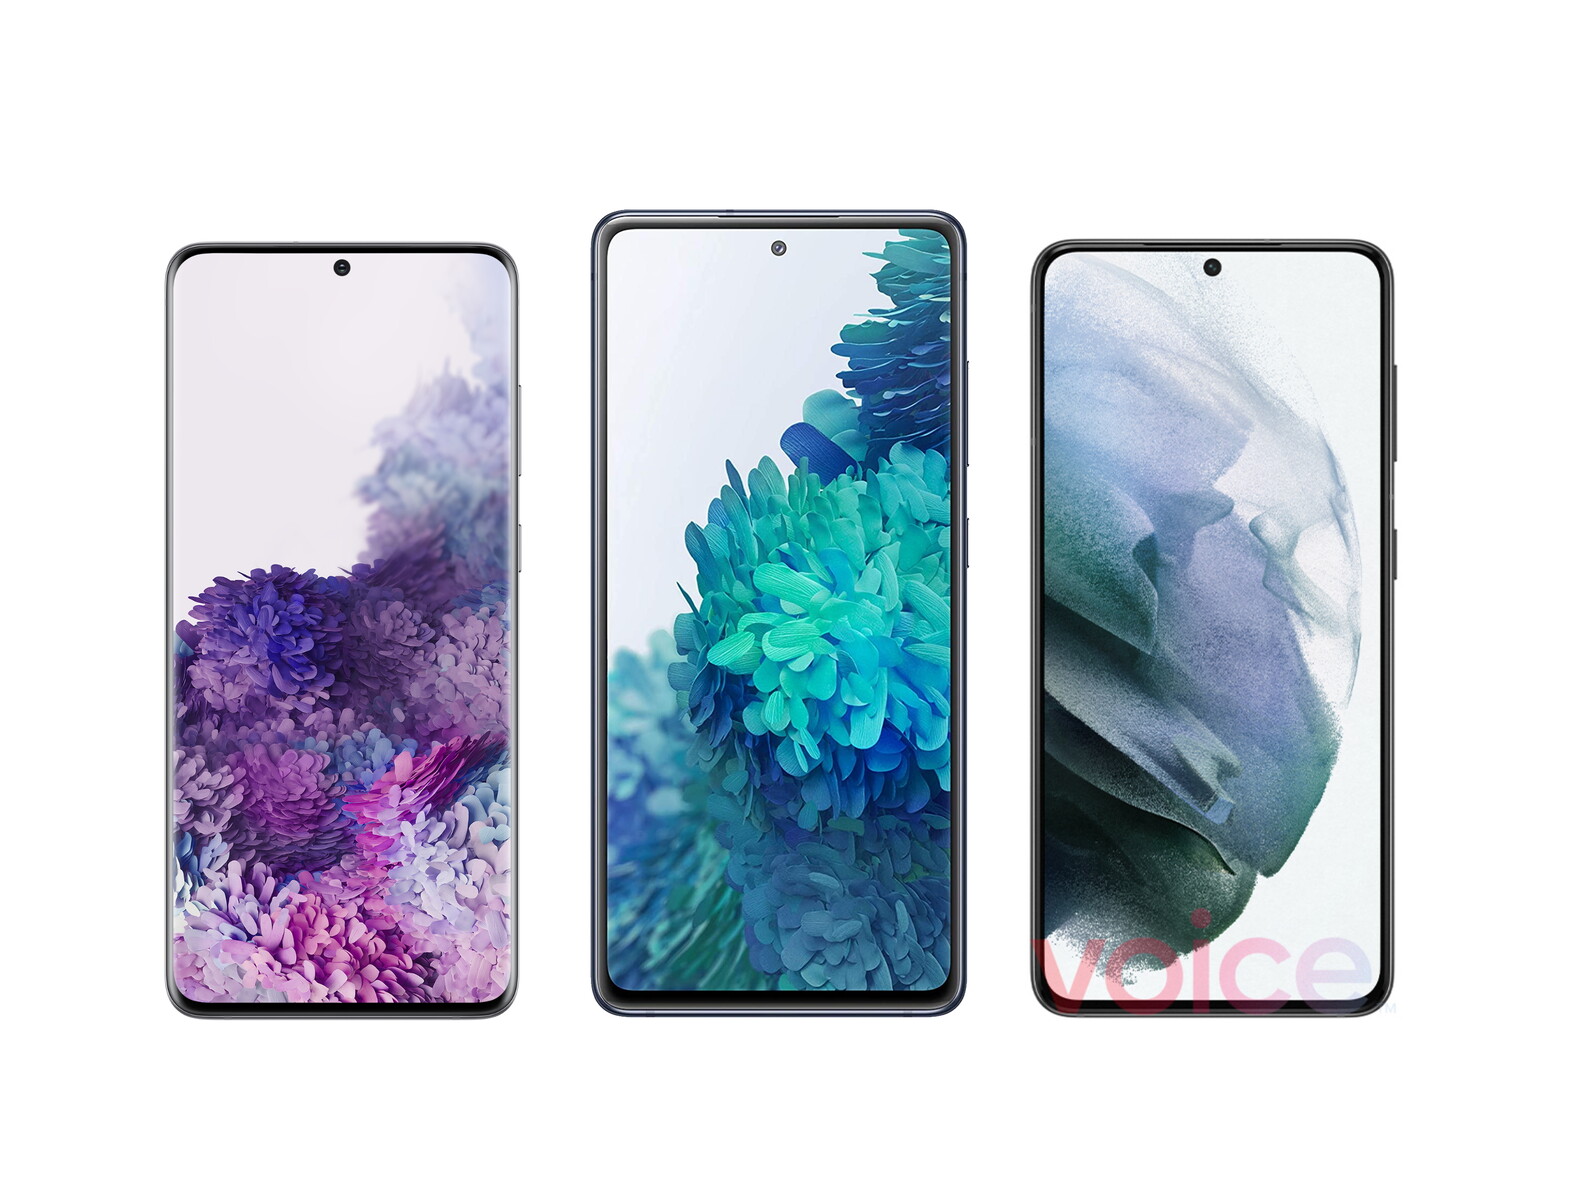 Hình nền Samsung Galaxy S21 – Điểm nhấn thú vị cho điện thoại của bạn! Với hình ảnh sắc nét và màu sắc bắt mắt, bức hình nền Samsung Galaxy S21 sẽ khiến cho giao diện của điện thoại thật tuyệt vời. Hãy cùng xem bức hình để đưa thêm sự mới mẻ và đẹp đẽ cho thiết bị của bạn.